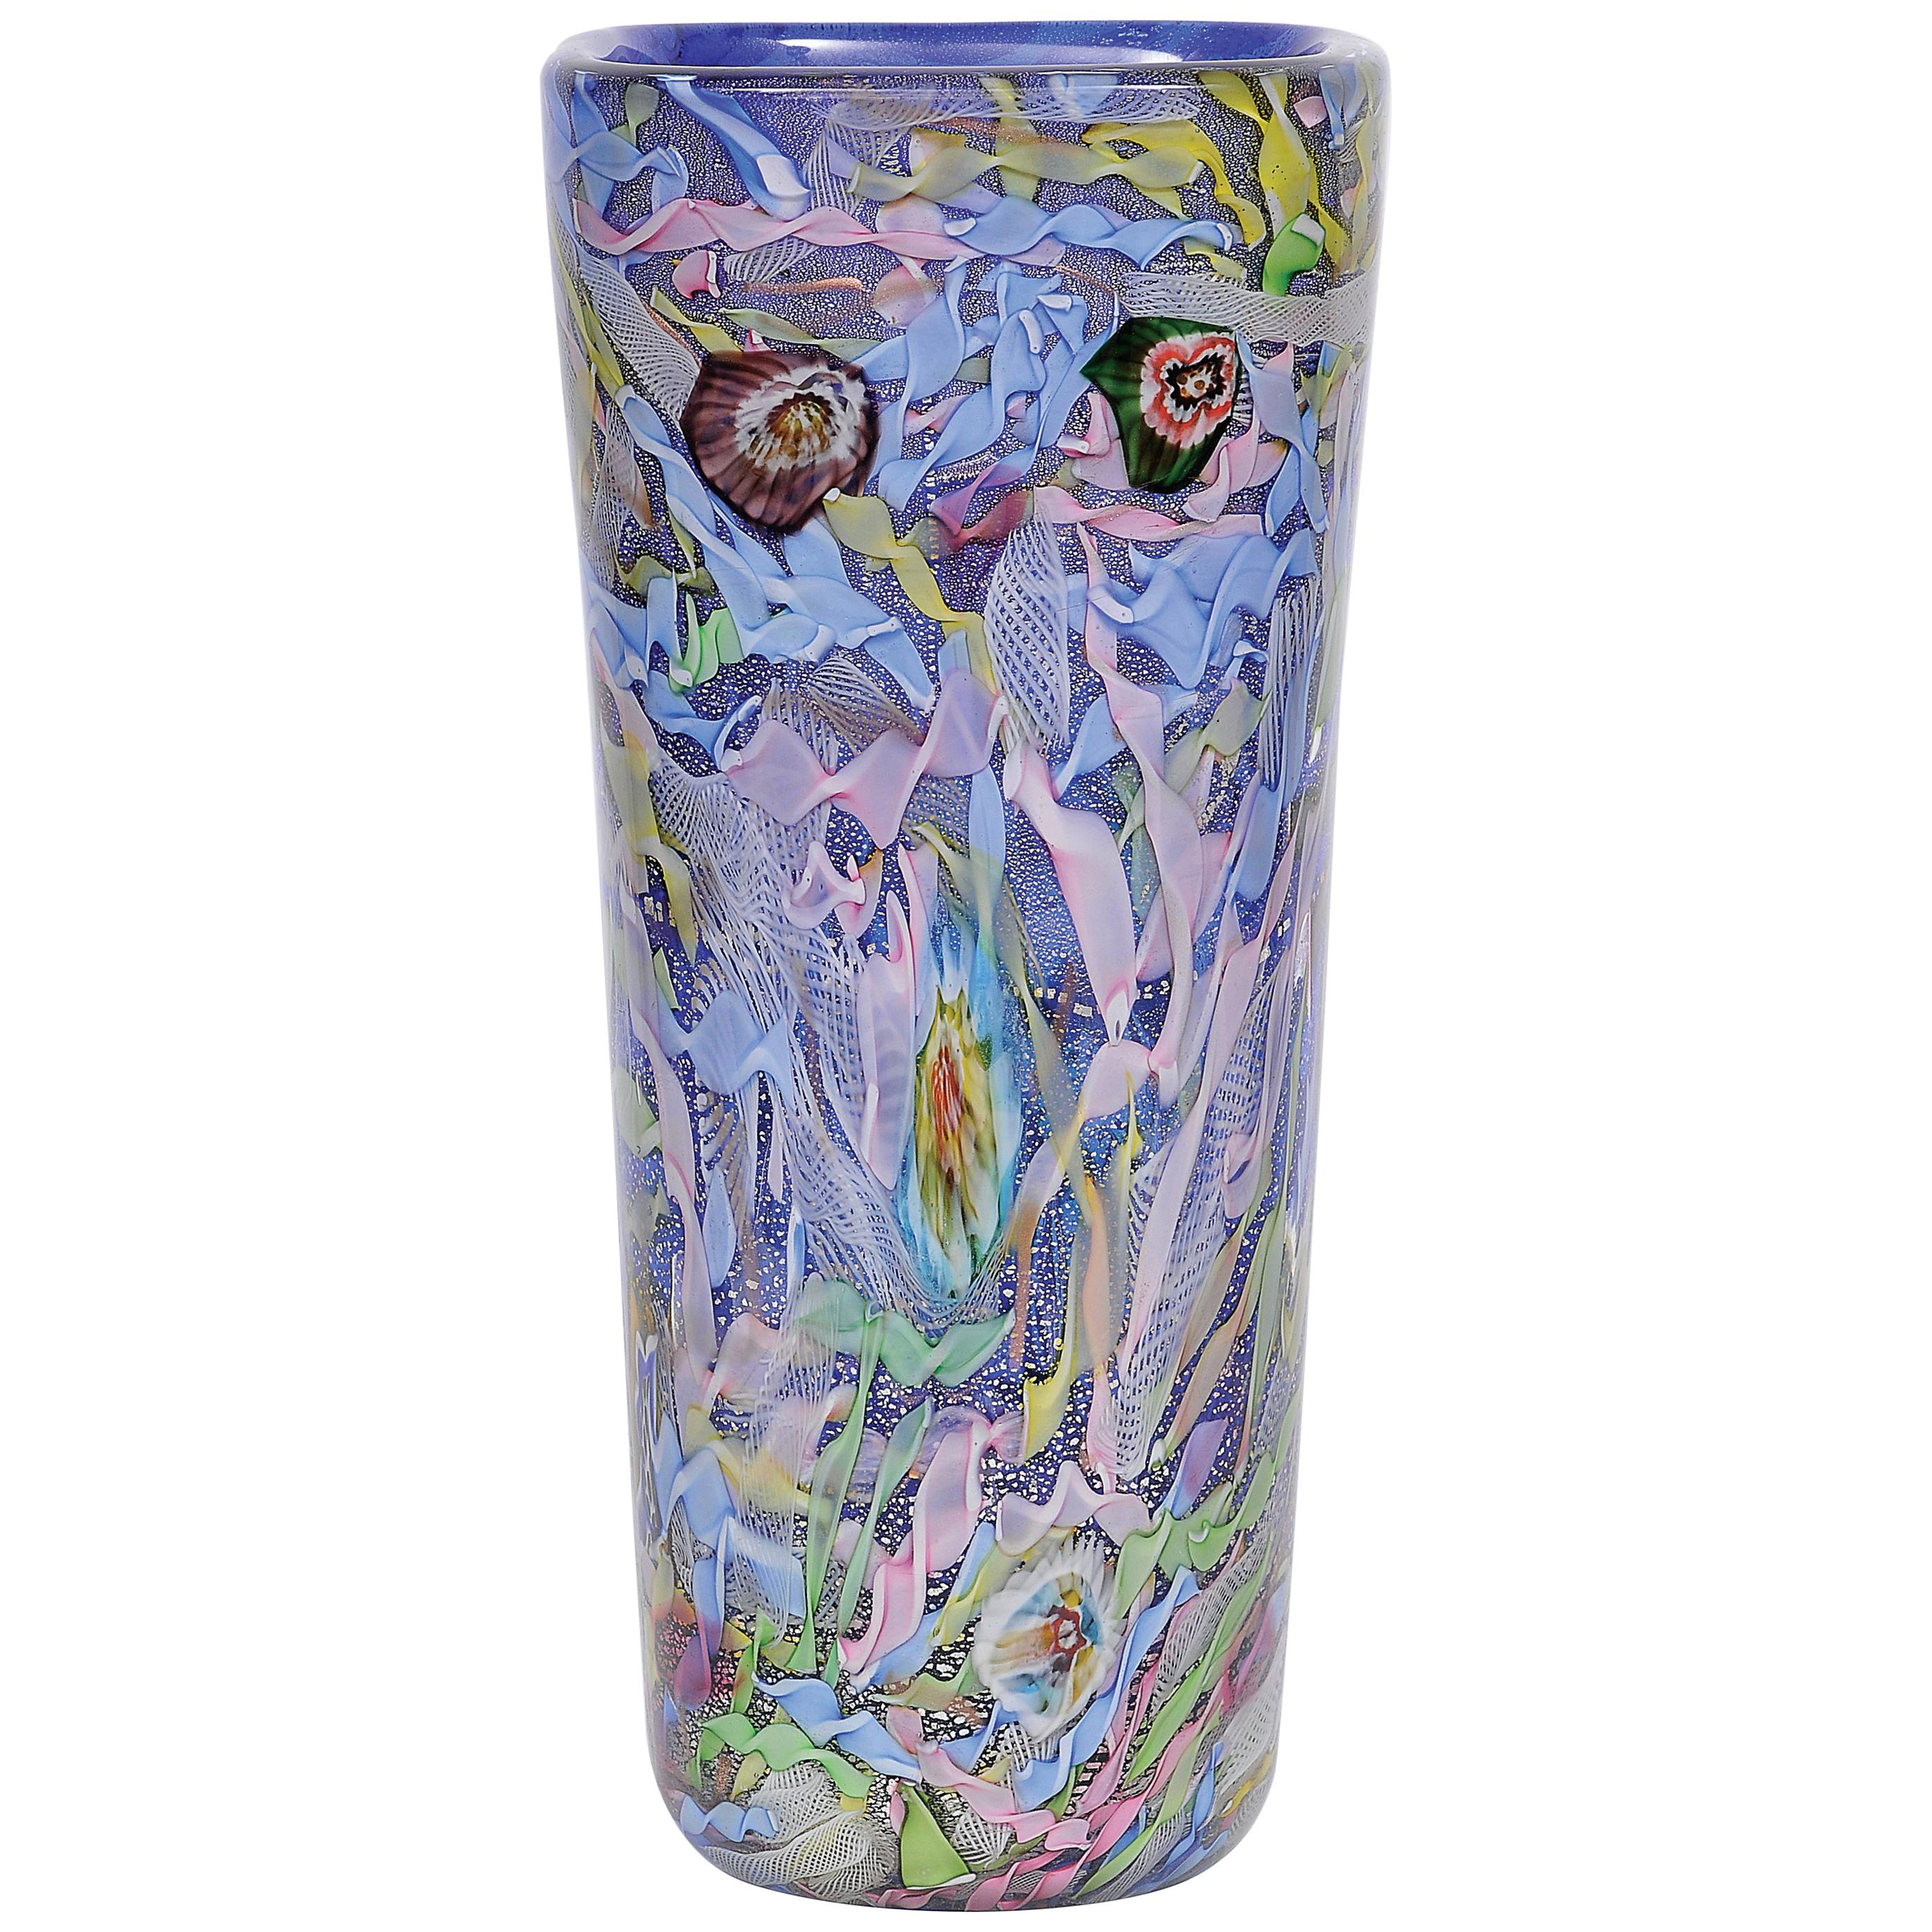 AVeM Vase, Artistic Blown Murano Glass, Multicolored and Blue, circa 1950 For Sale